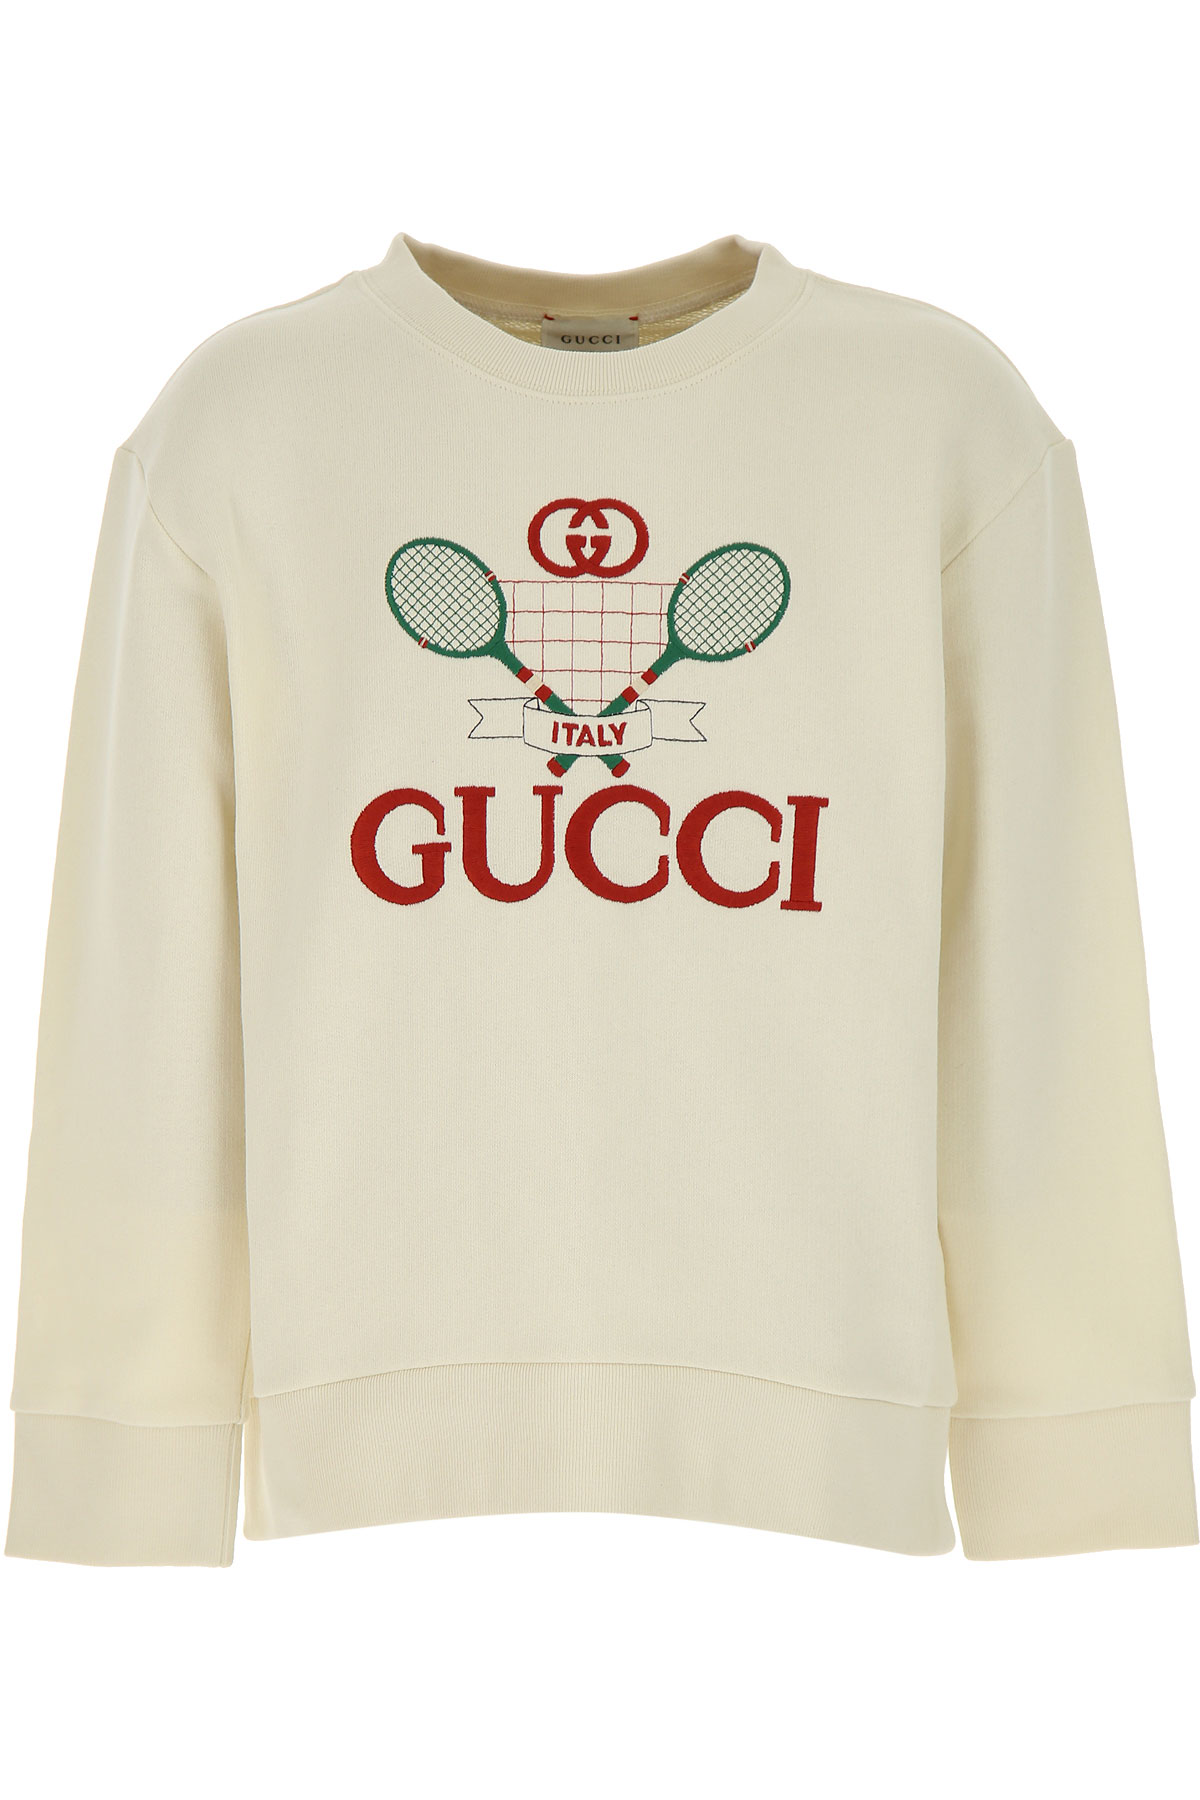 Gucci Kinder Sweatshirt & Kapuzenpullover für Jungen Günstig im Sale, Weiss, Baumwolle, 2017, 6Y 8Y